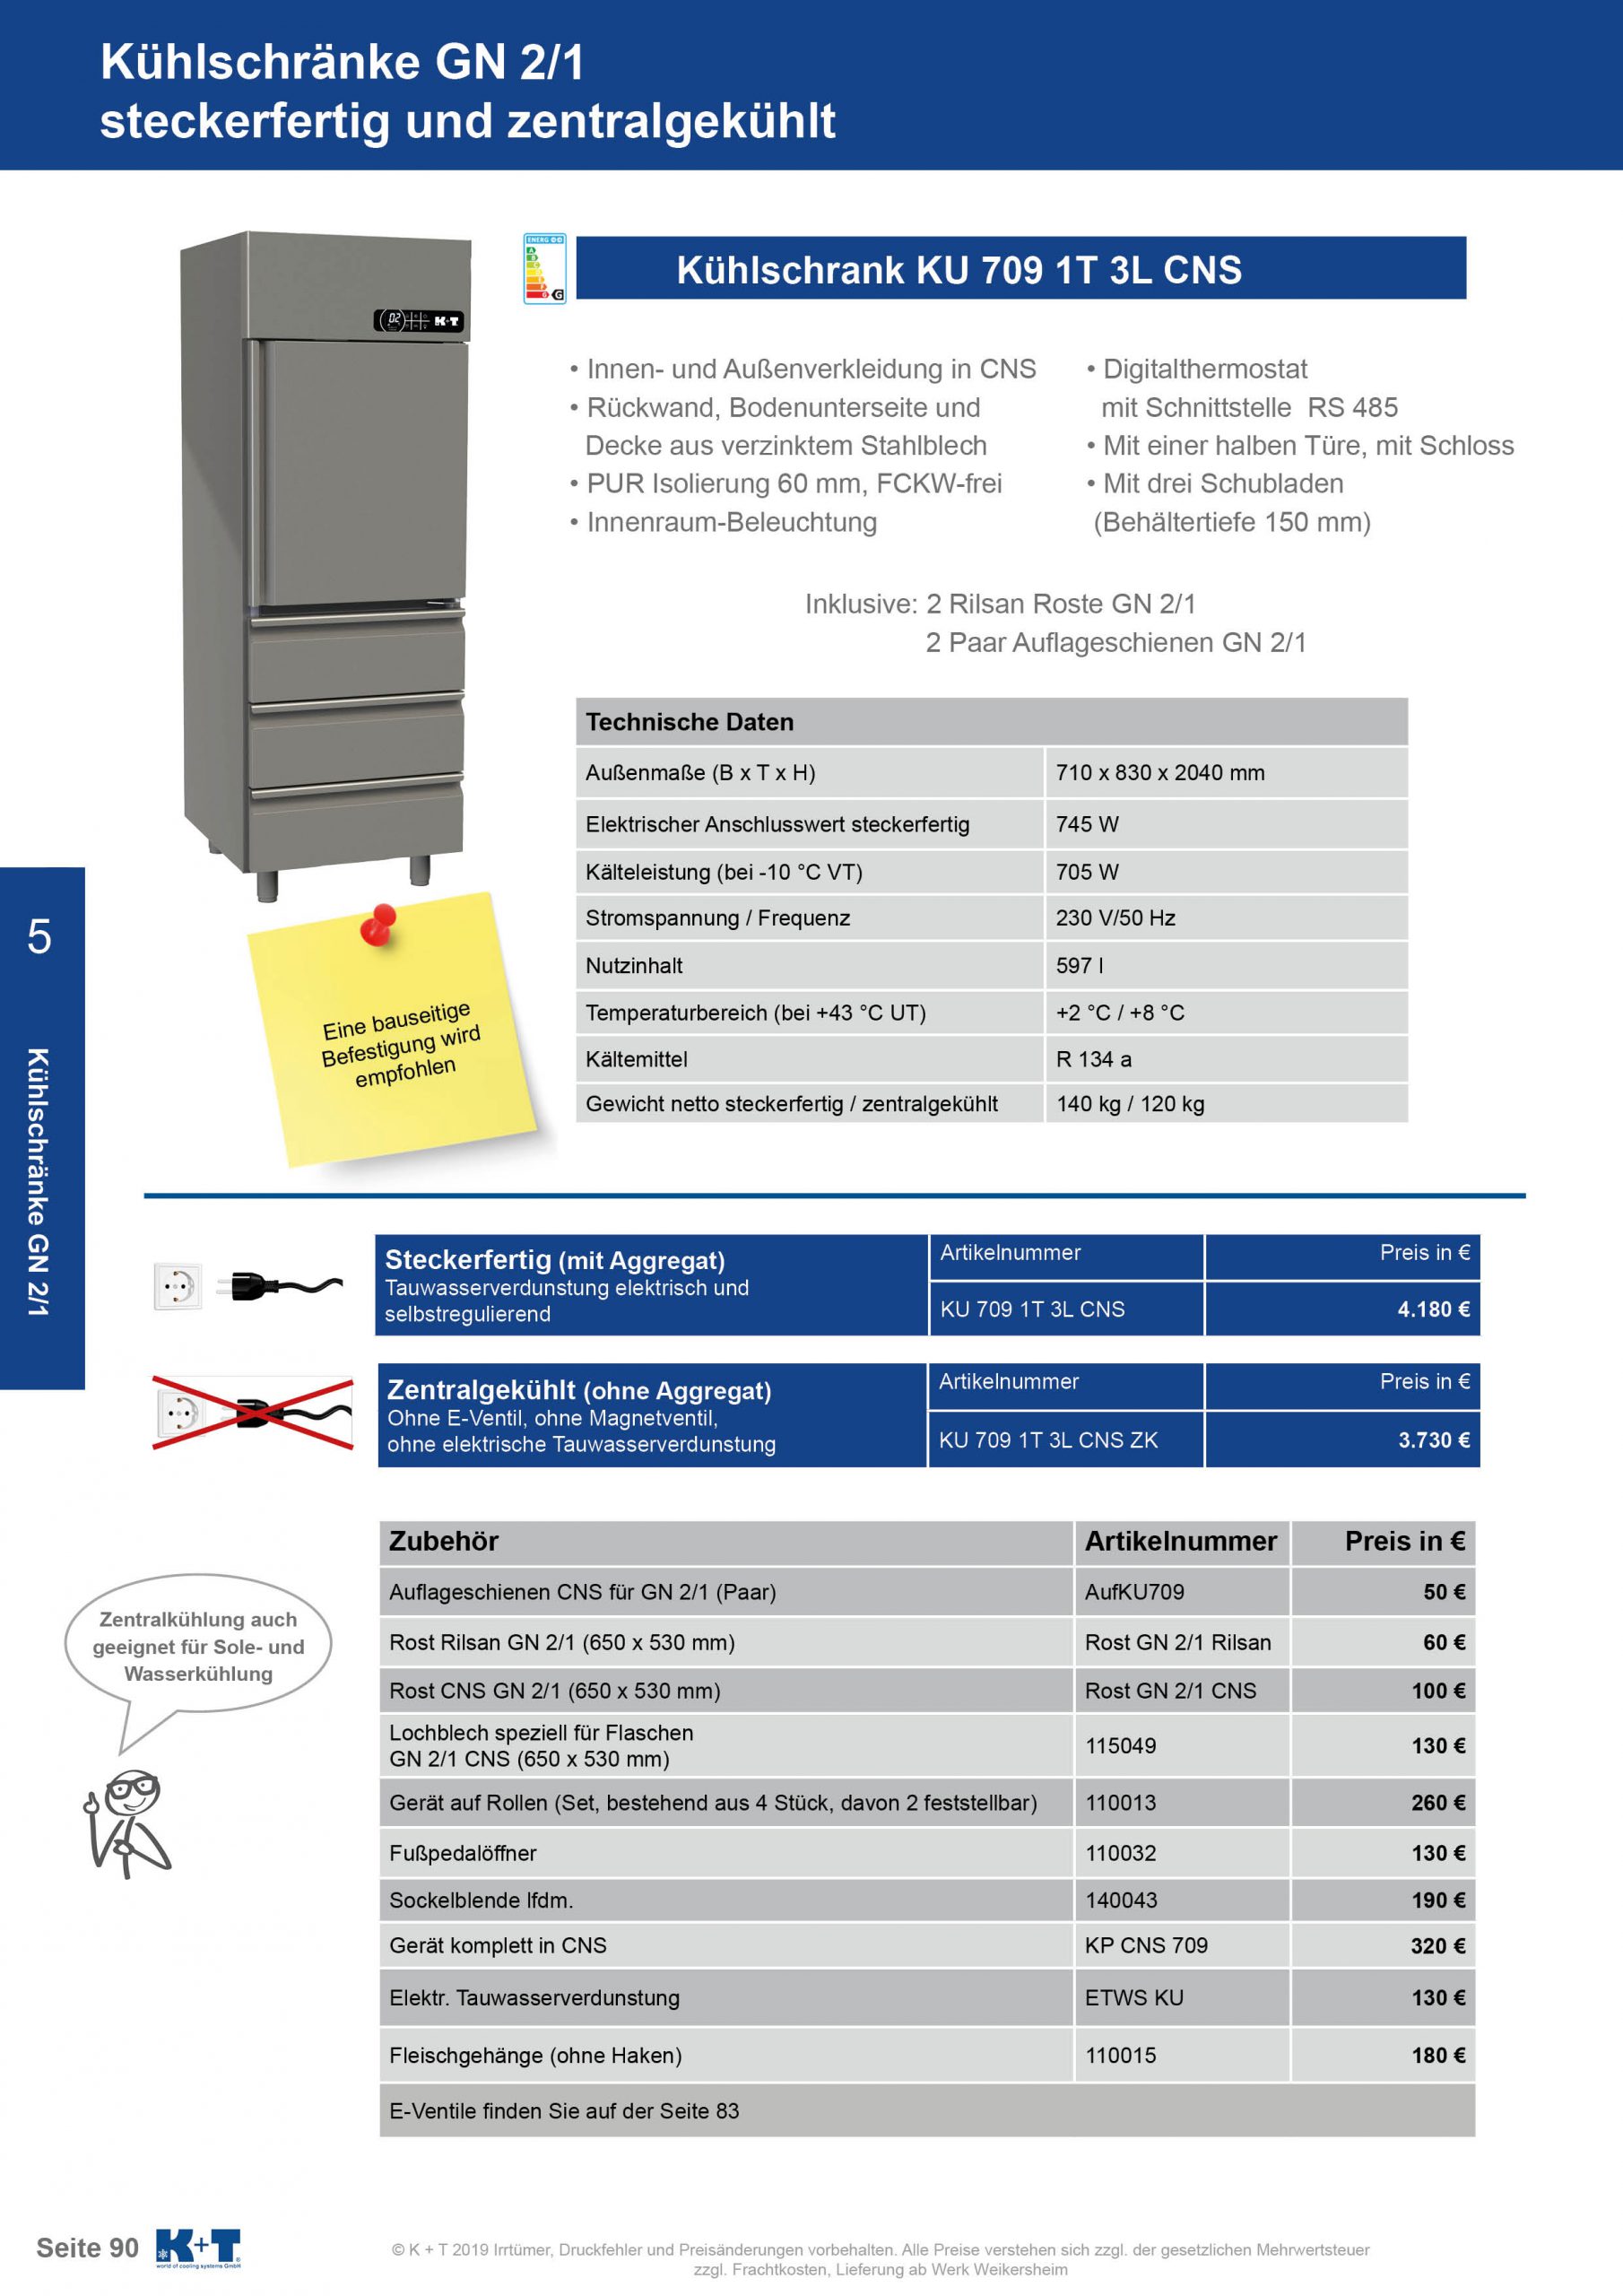 Kühlschränke GN 2_1 Kühlschrank mit ½ Tür und 3 Schubladen zentralgekühlt